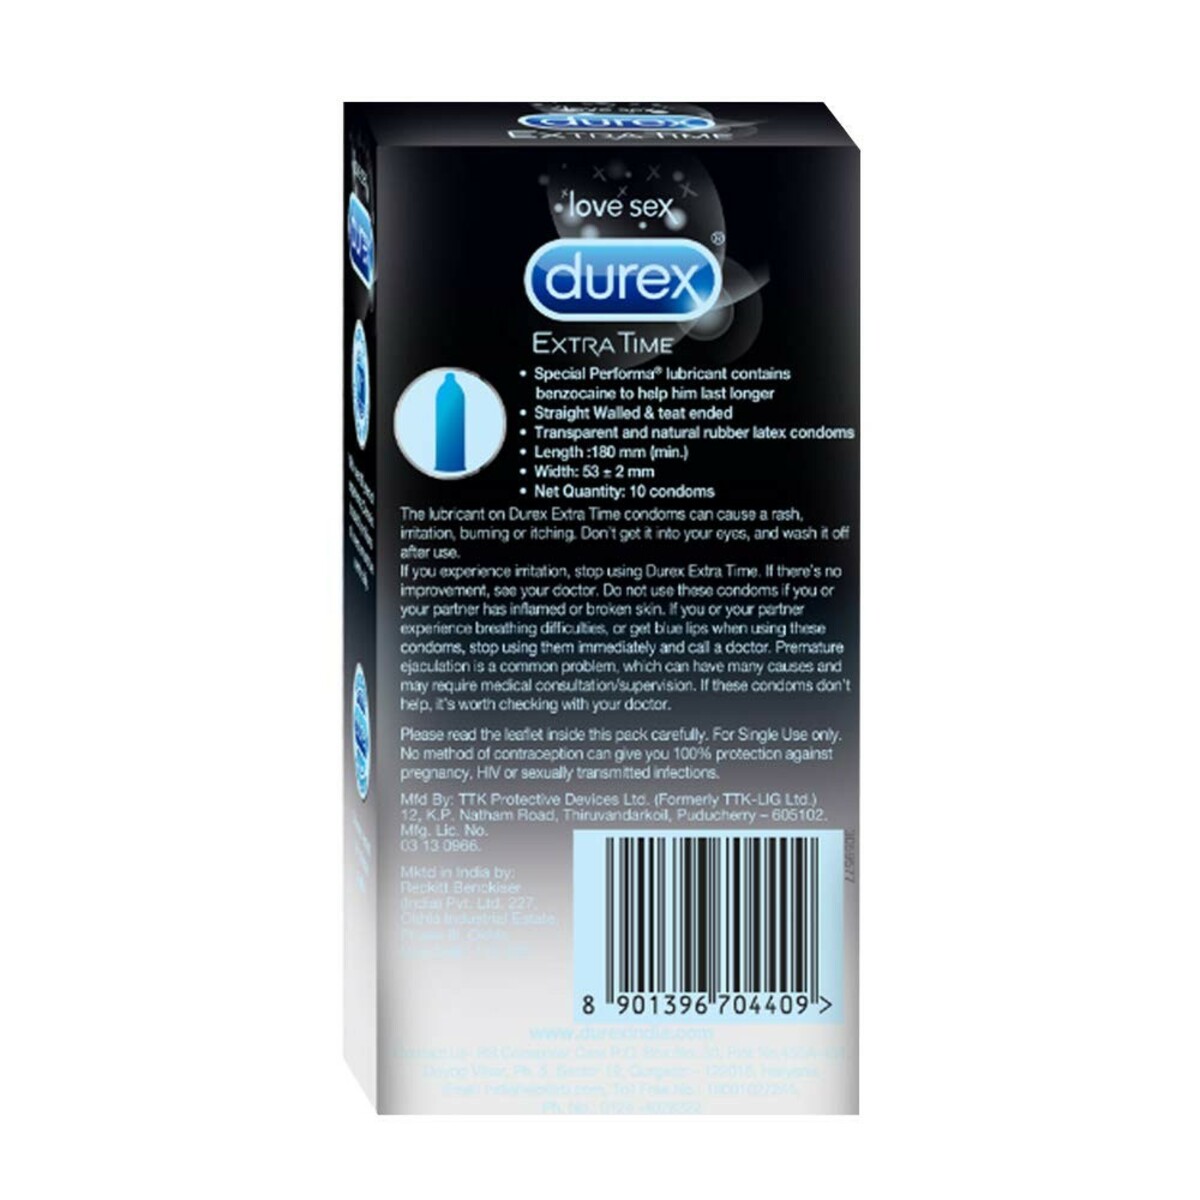 Durex Condoms Extra Time 10's